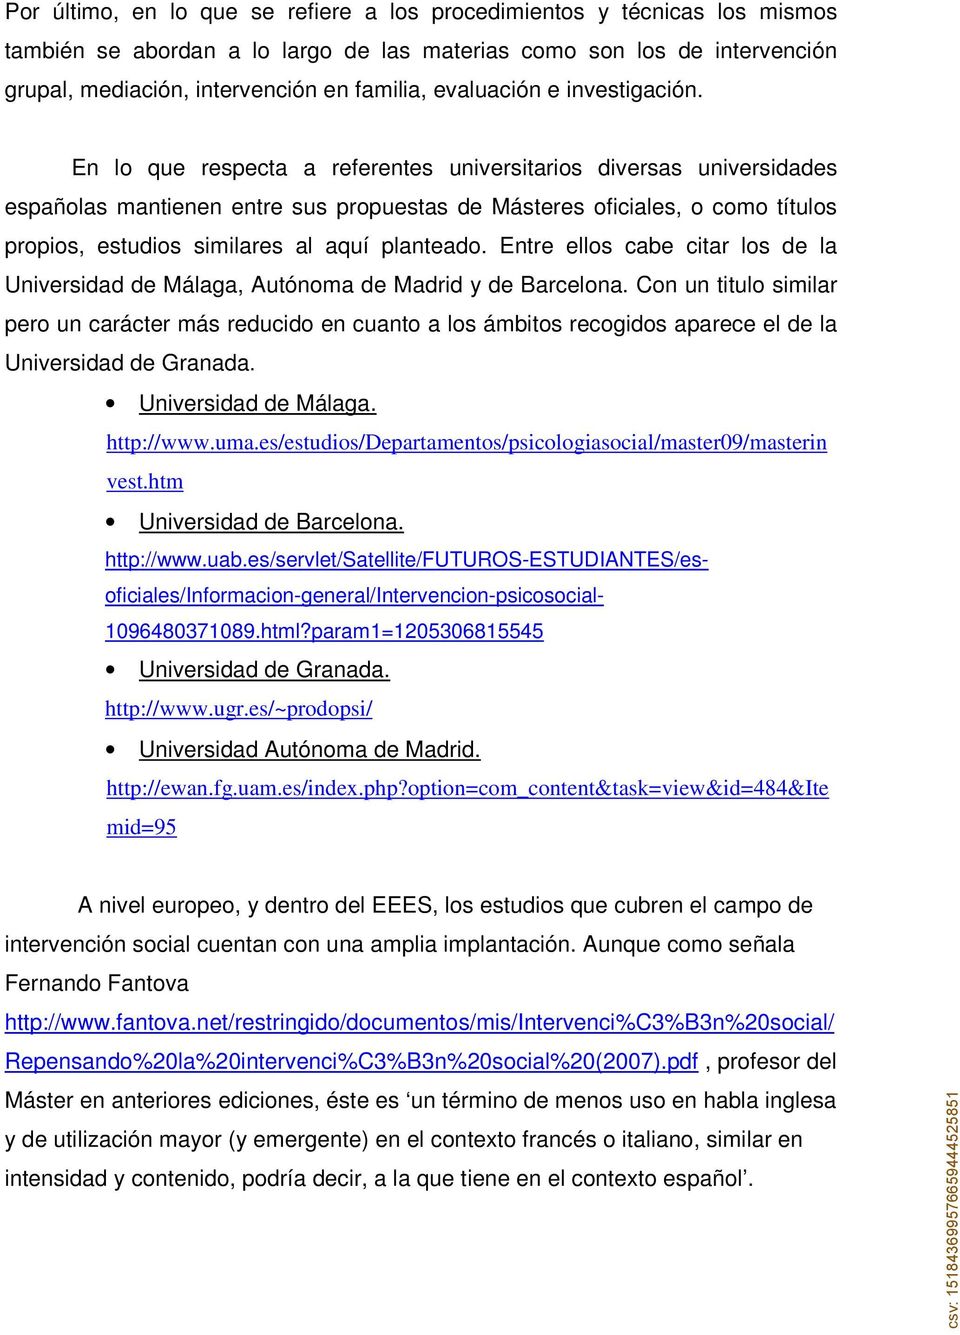 En lo que respecta a referentes universitarios diversas universidades españolas mantienen entre sus propuestas de Másteres oficiales, o como títulos propios, estudios similares al aquí planteado.